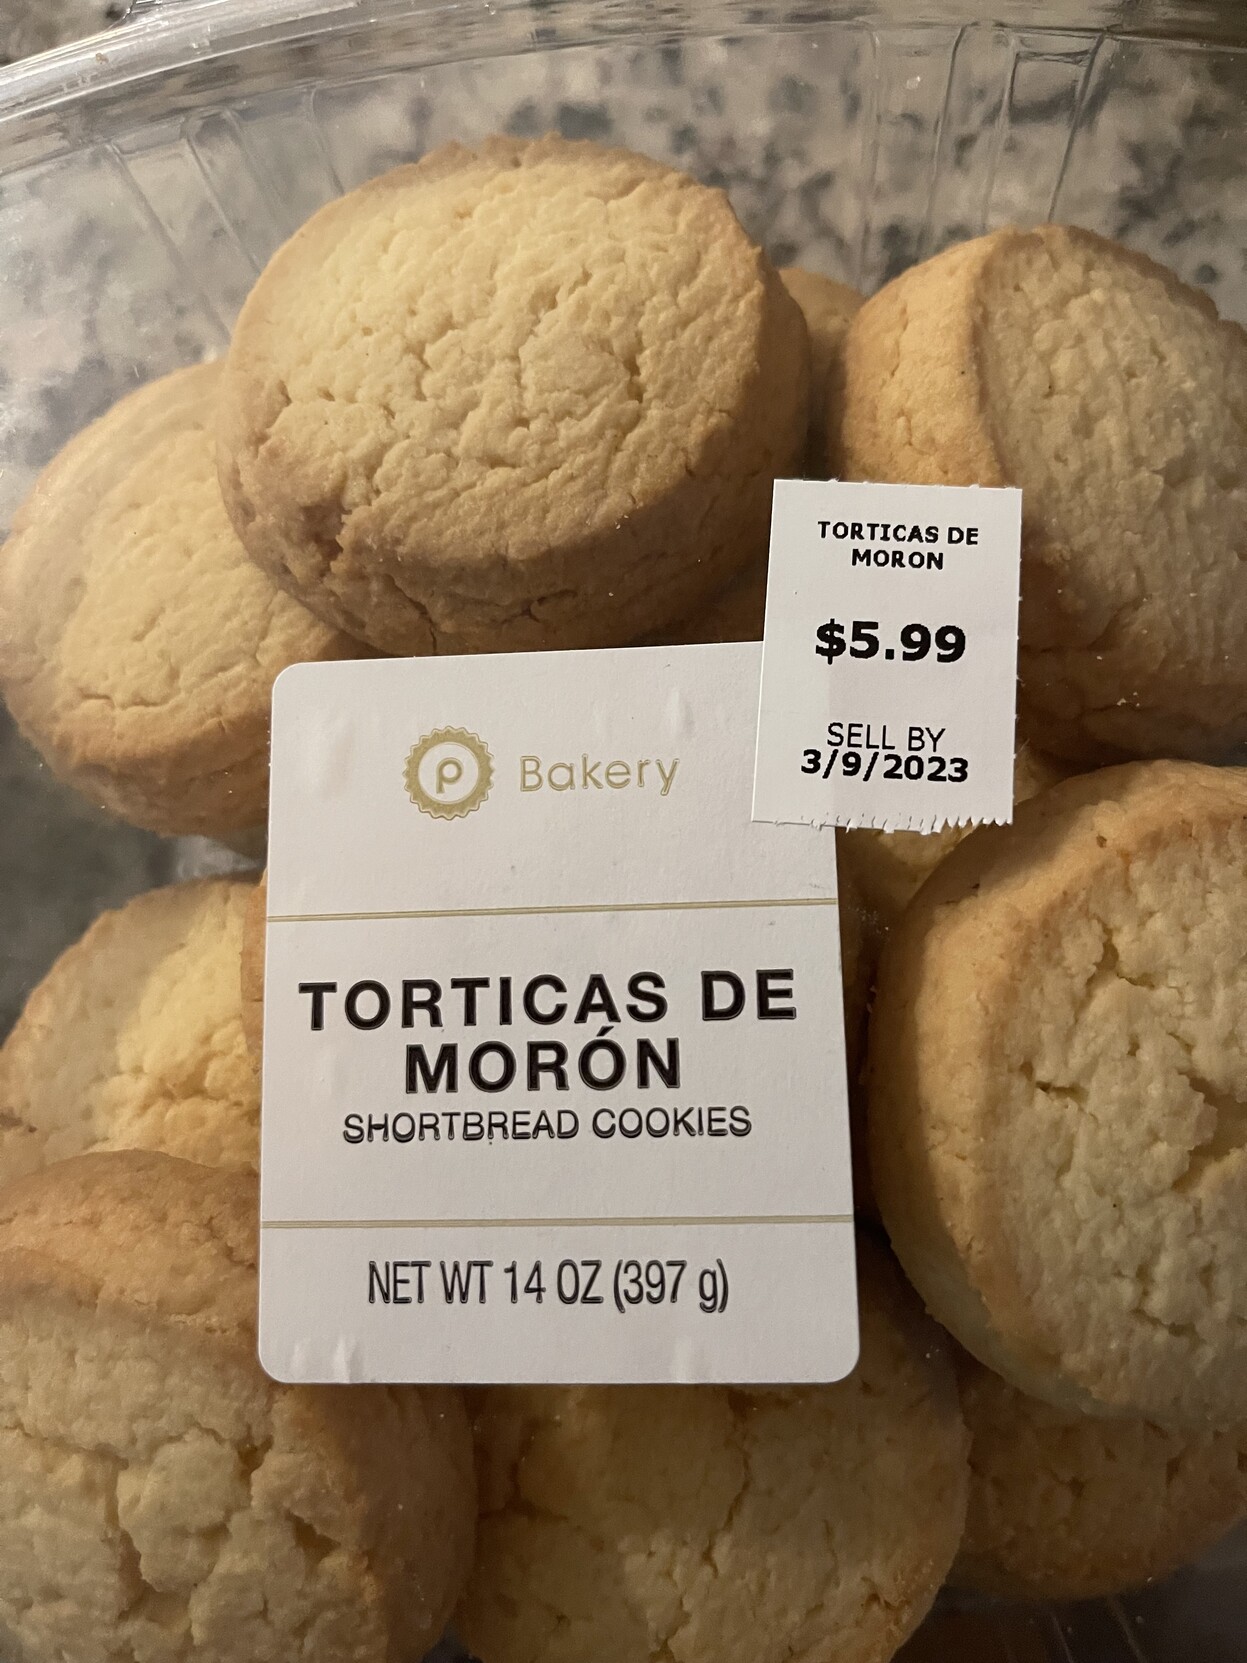 photograph of cookies in packaging, called “torticas de moron, shortbread cookies”